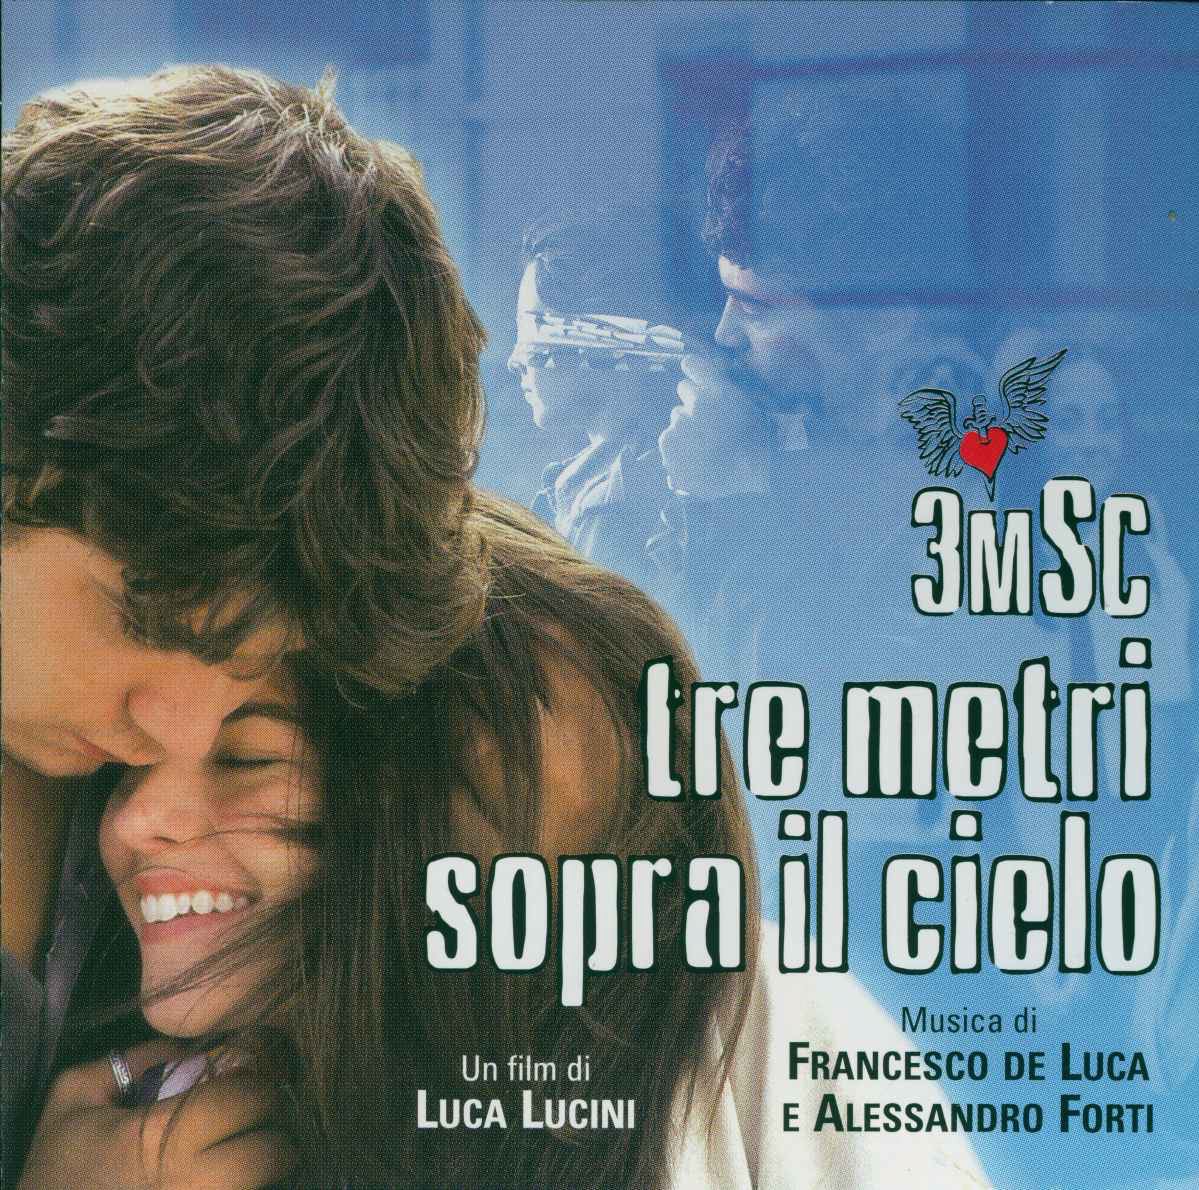 Tre metri sopra il cielo (colonna sonora) by Alessandro Forti & Francesco  de Luca on Apple Music